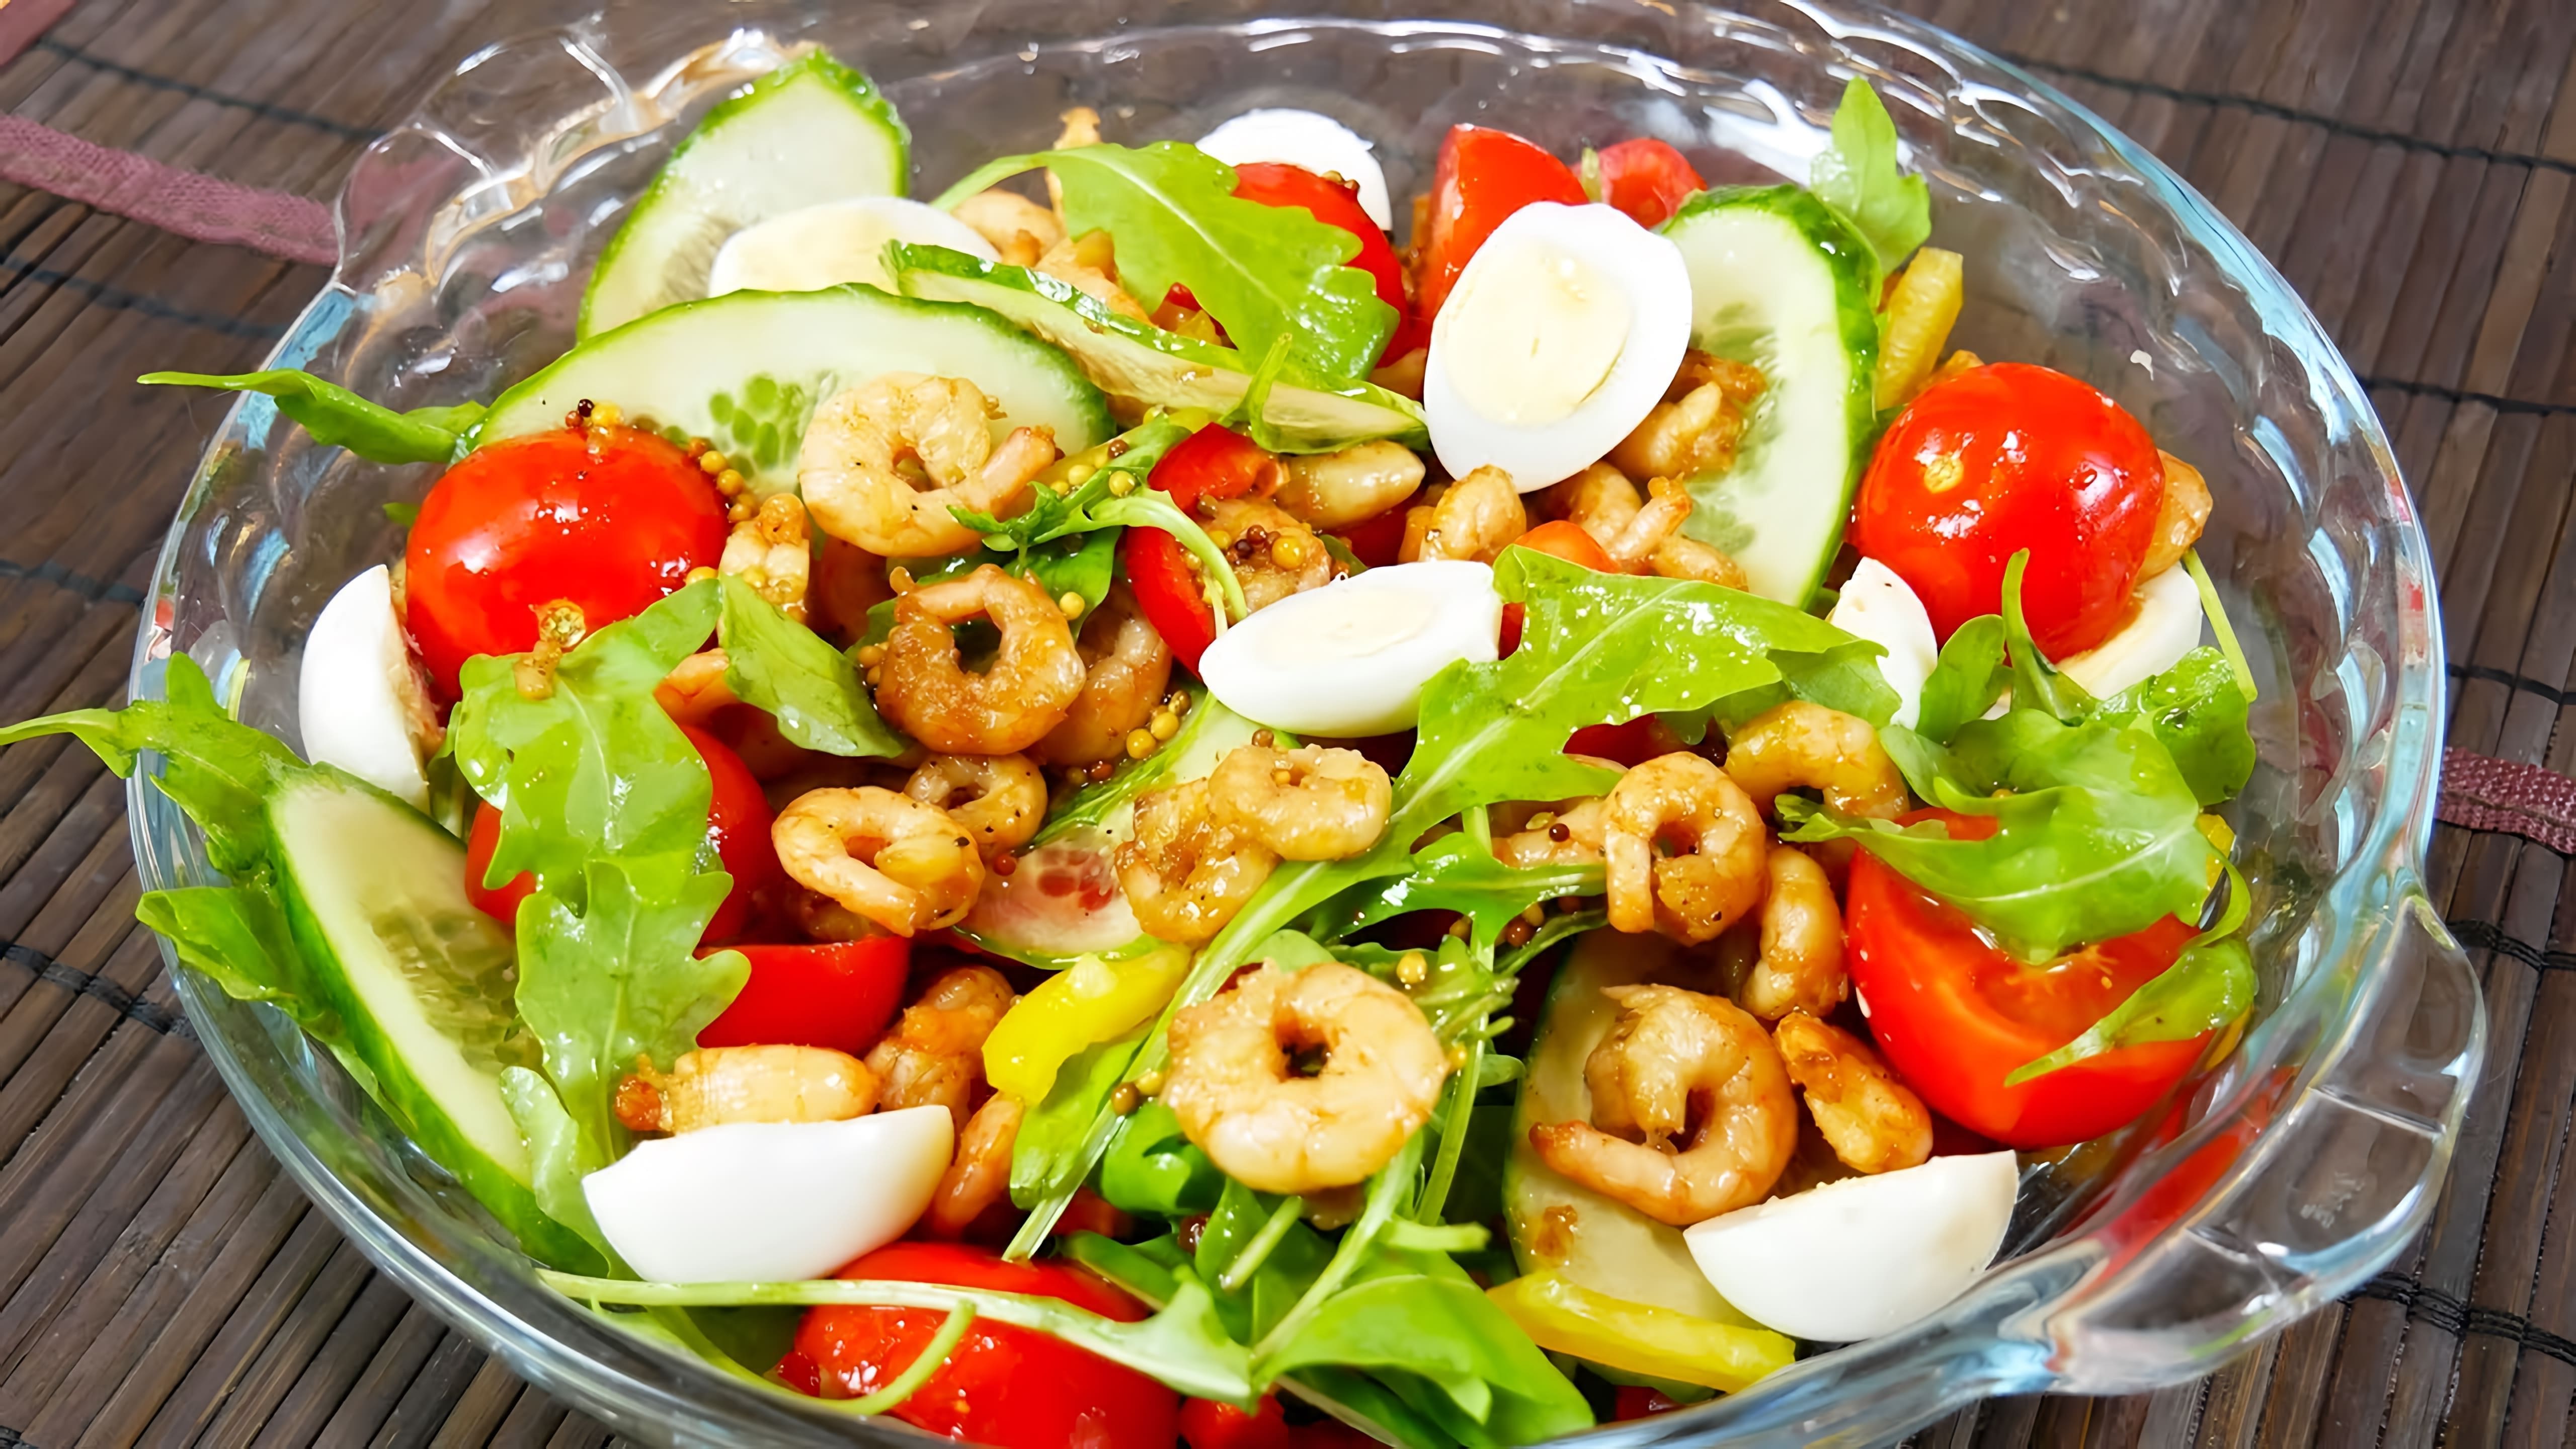 Салат с креветками - это вкусное и питательное блюдо, которое можно приготовить в домашних условиях